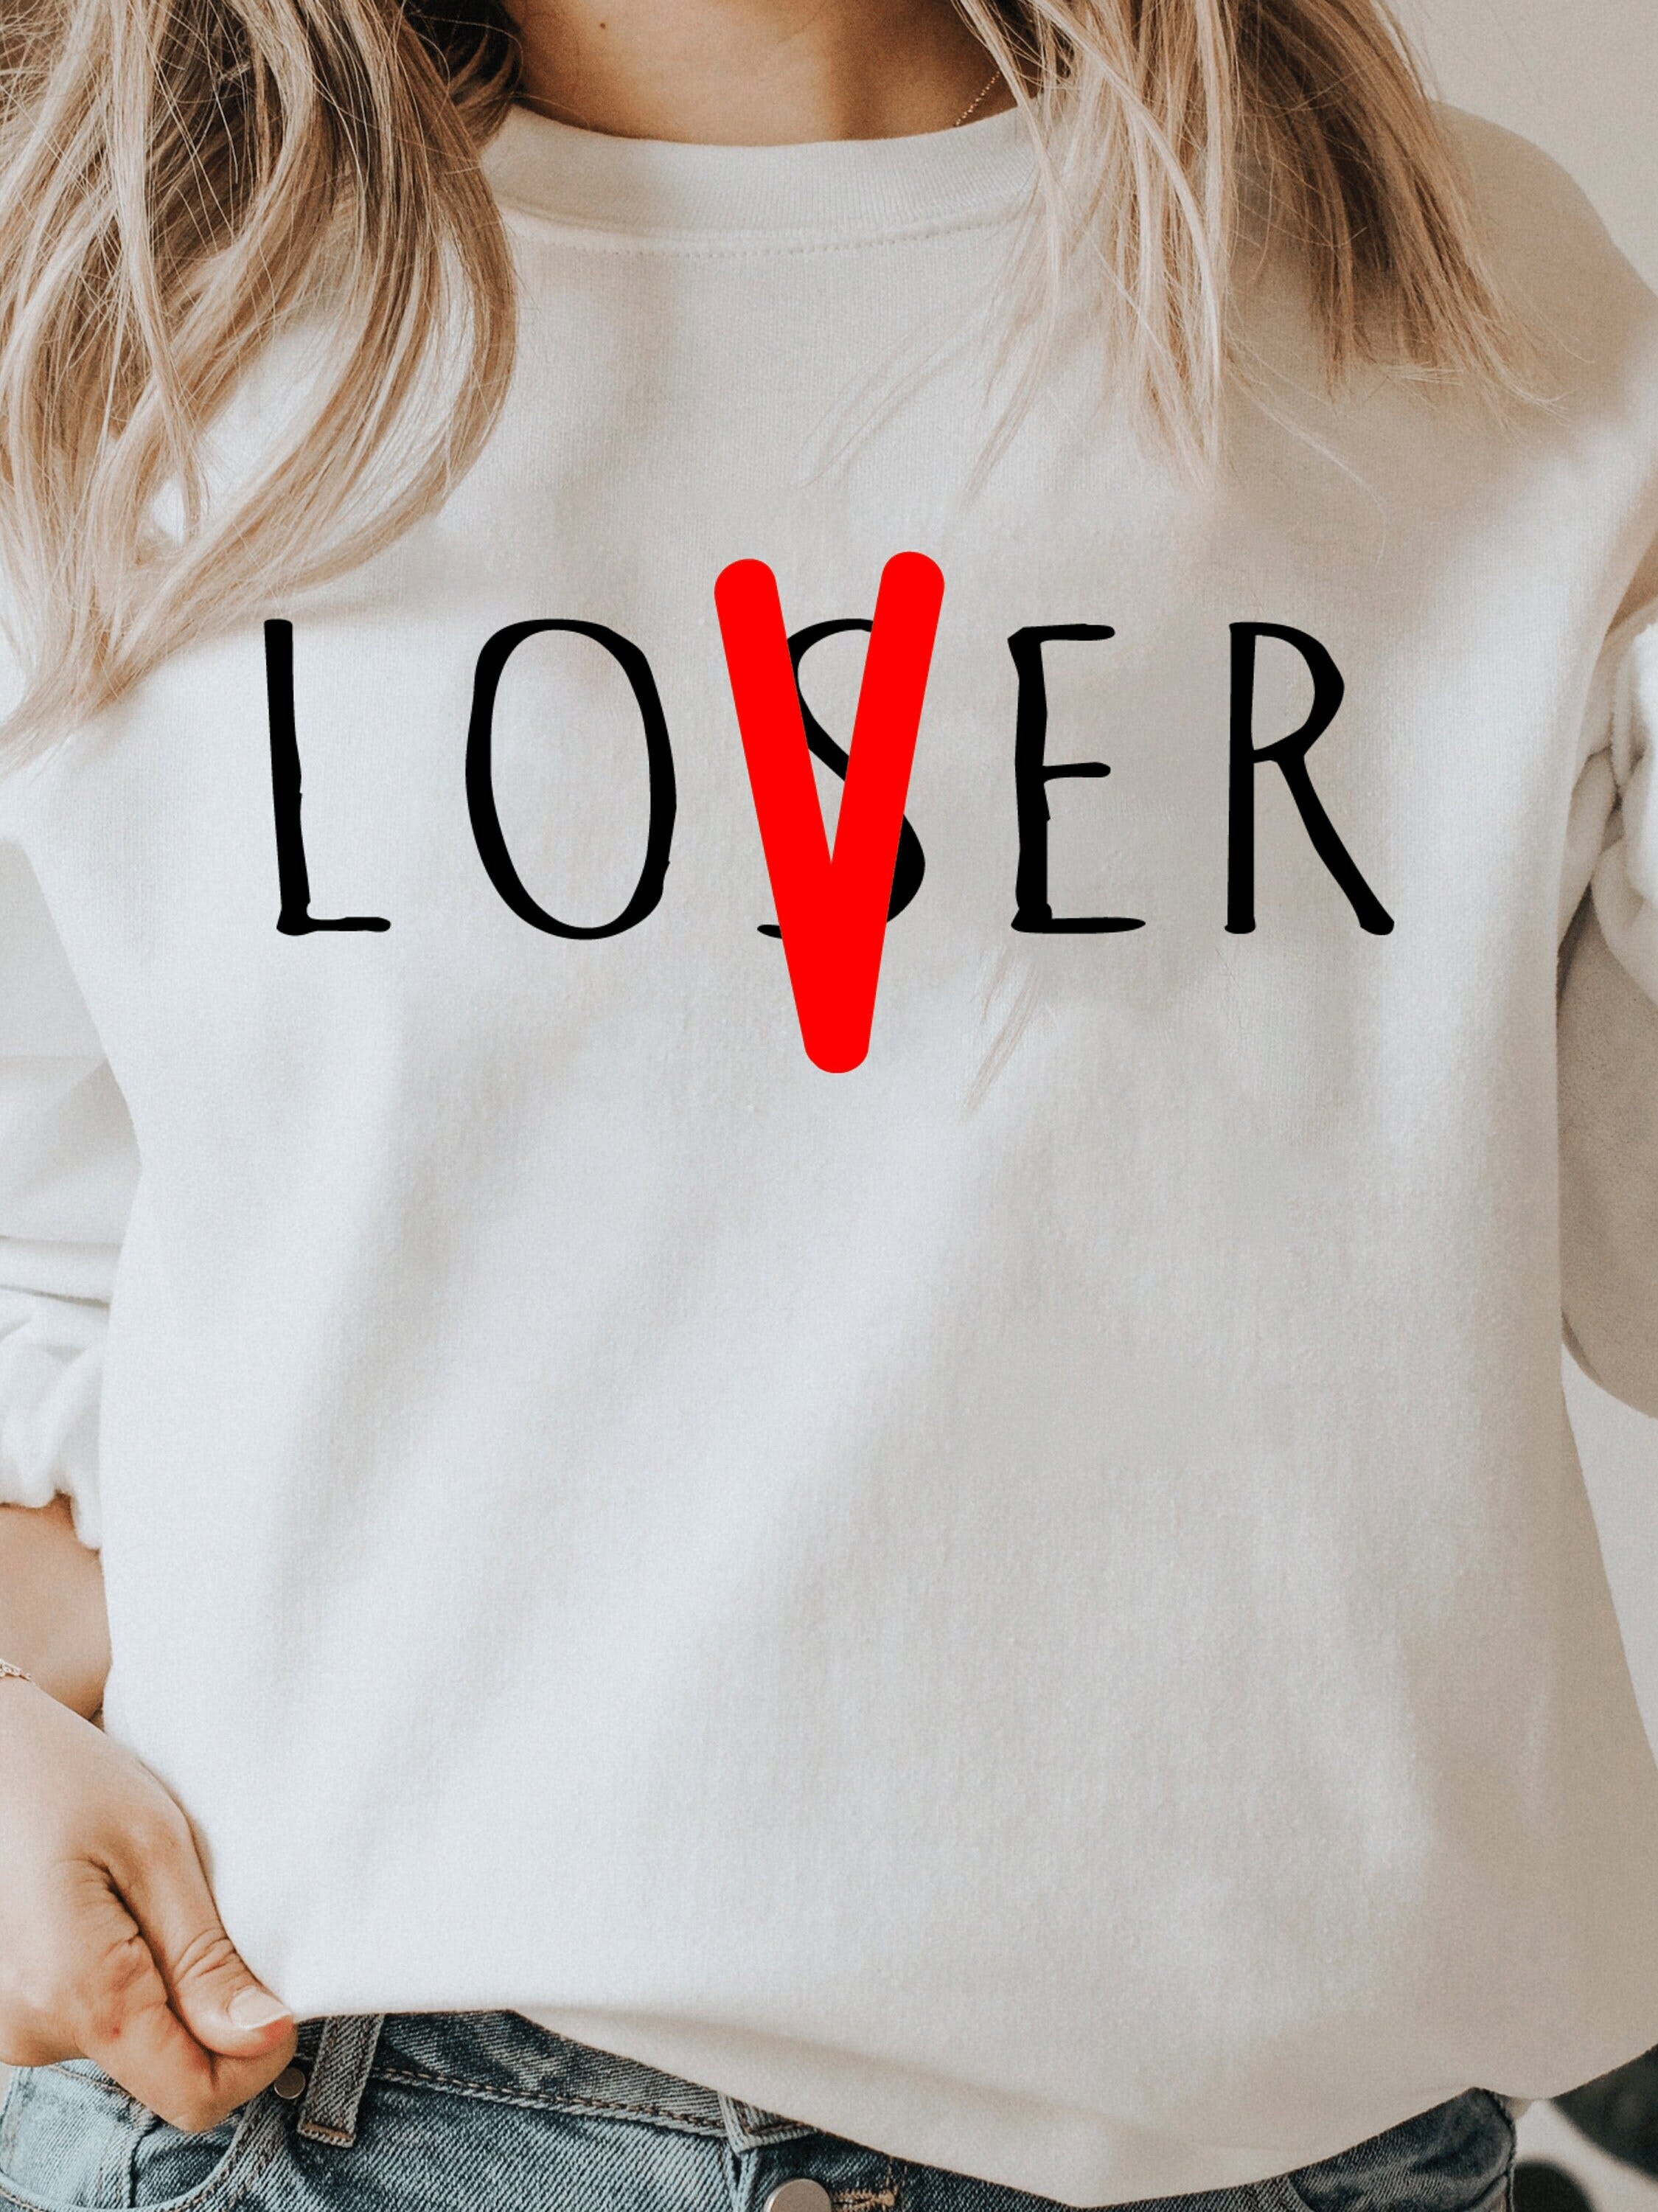 Loser, Lover SVG/Horror Movie Svg/Lover Svg/Loser Svg, Halloween svg, Png, Eps, Dxf, Ai Digital Download File